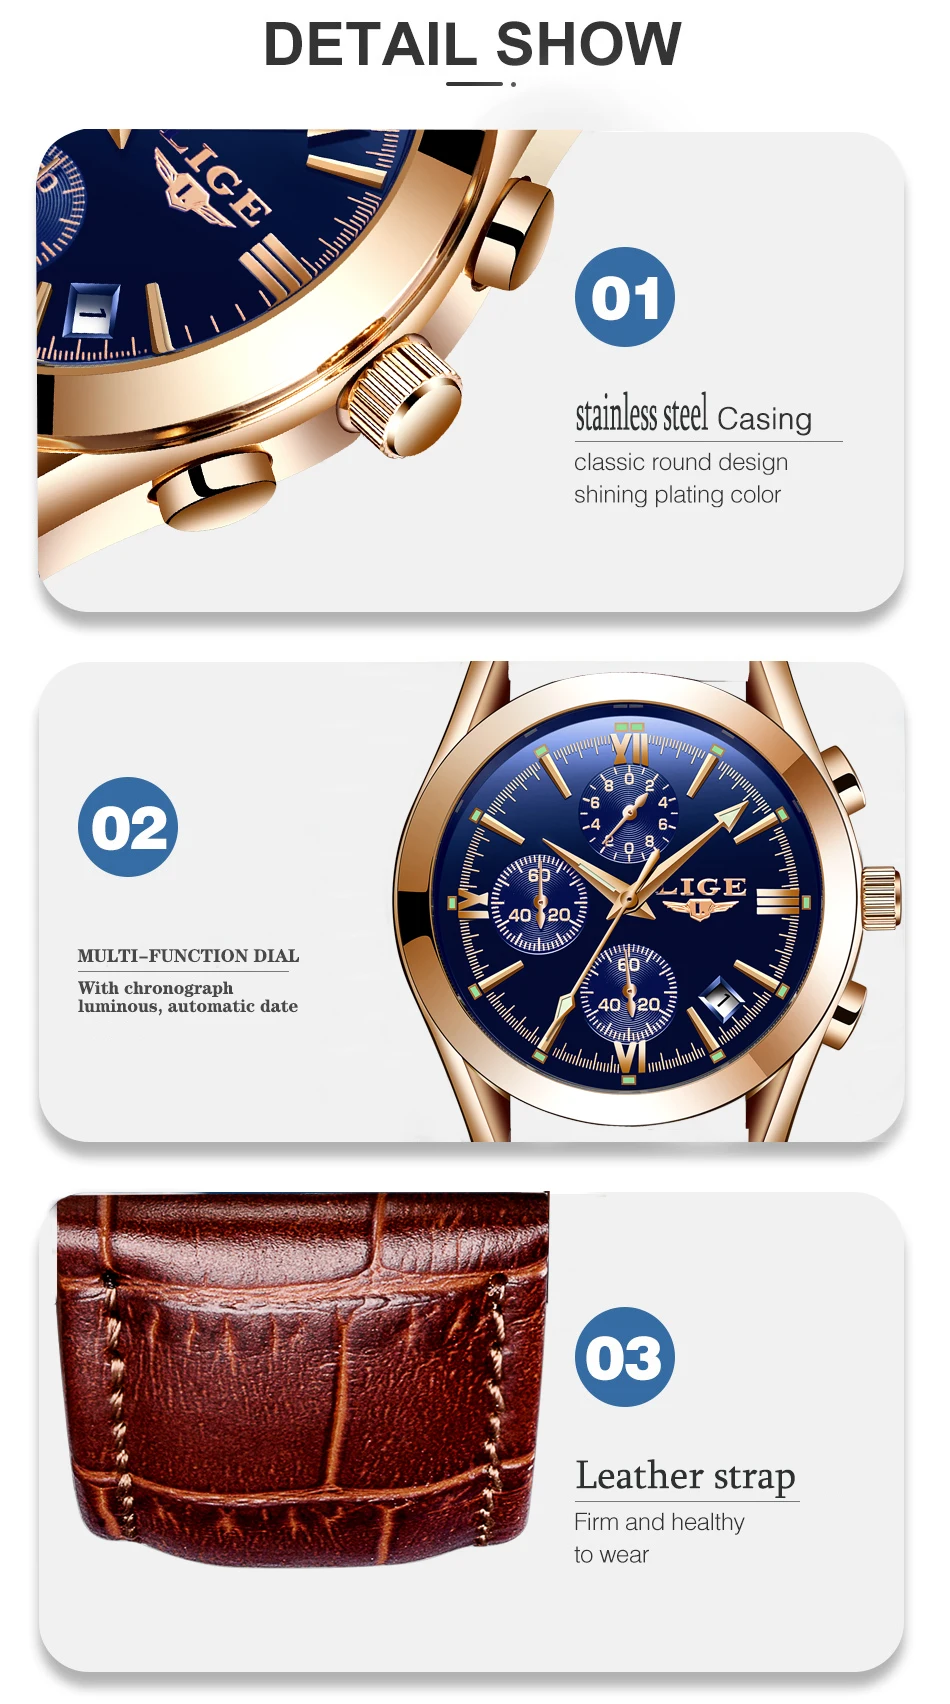 LIGE модные кожаные часы мужские спортивные кварцевые мужские часы, наручные часы Лидирующий бренд Роскошные Водонепроницаемые часы бизнес класса Relogio Masculino+ коробка